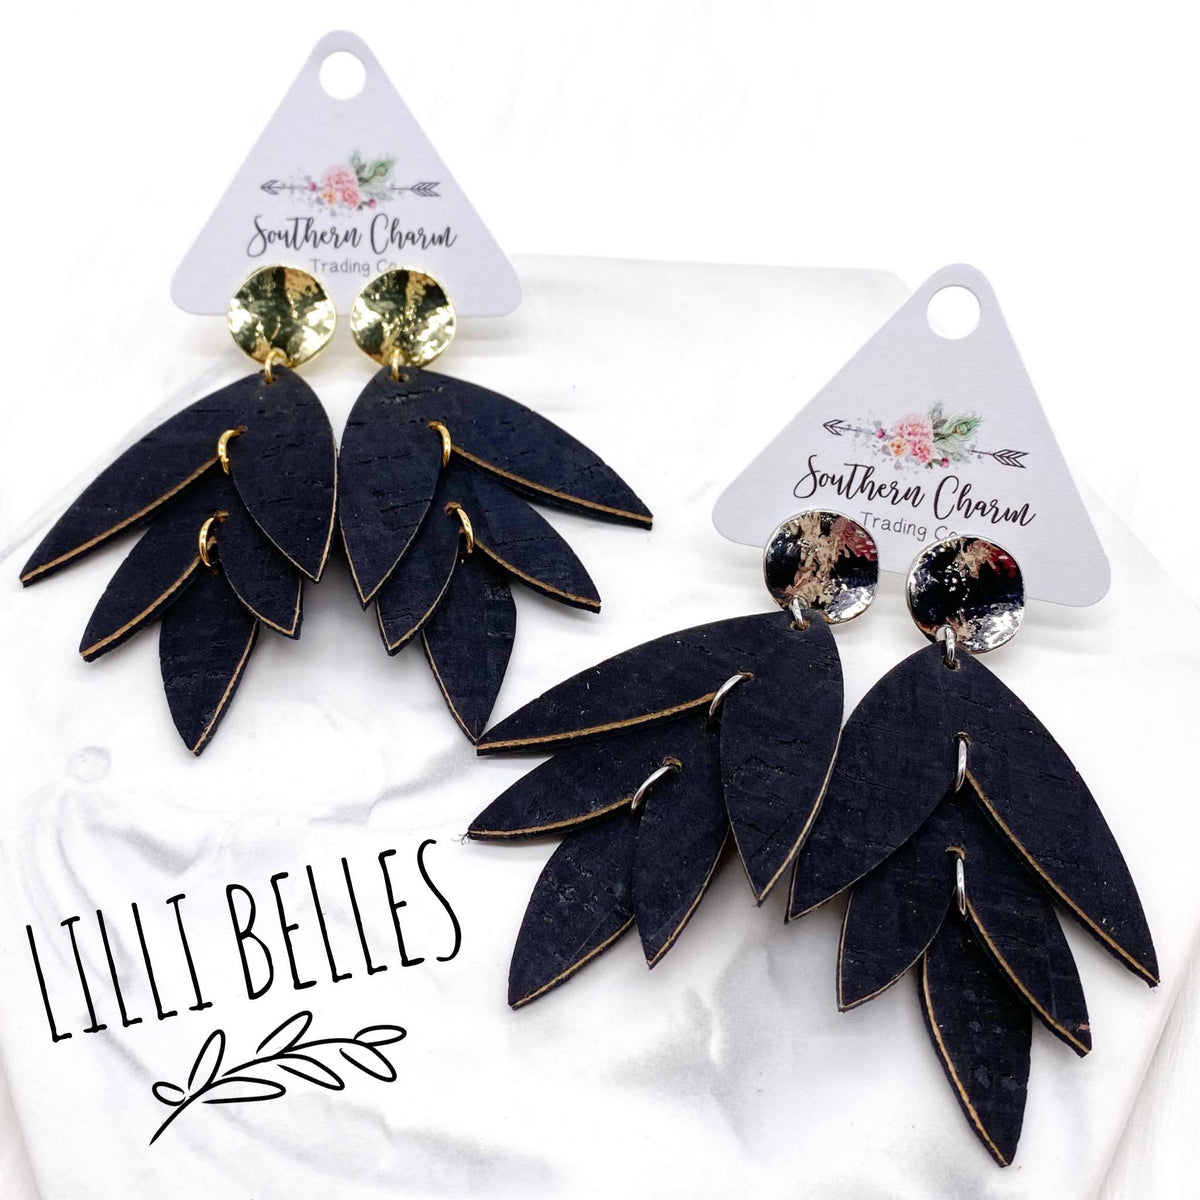 3" Black Lilli Belle Earrings- Gold